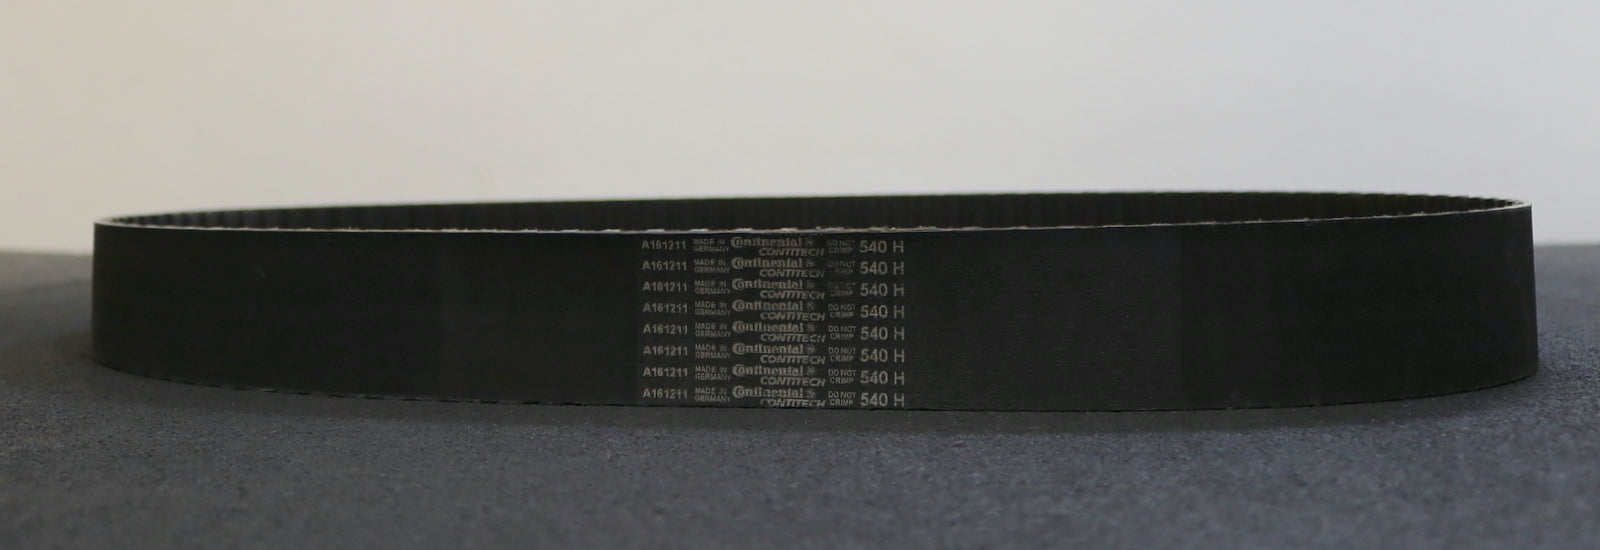 CONTITECH Zahnriemen Timing belt 540H Länge 1371,6mm Breite 49mm - unbenutzt